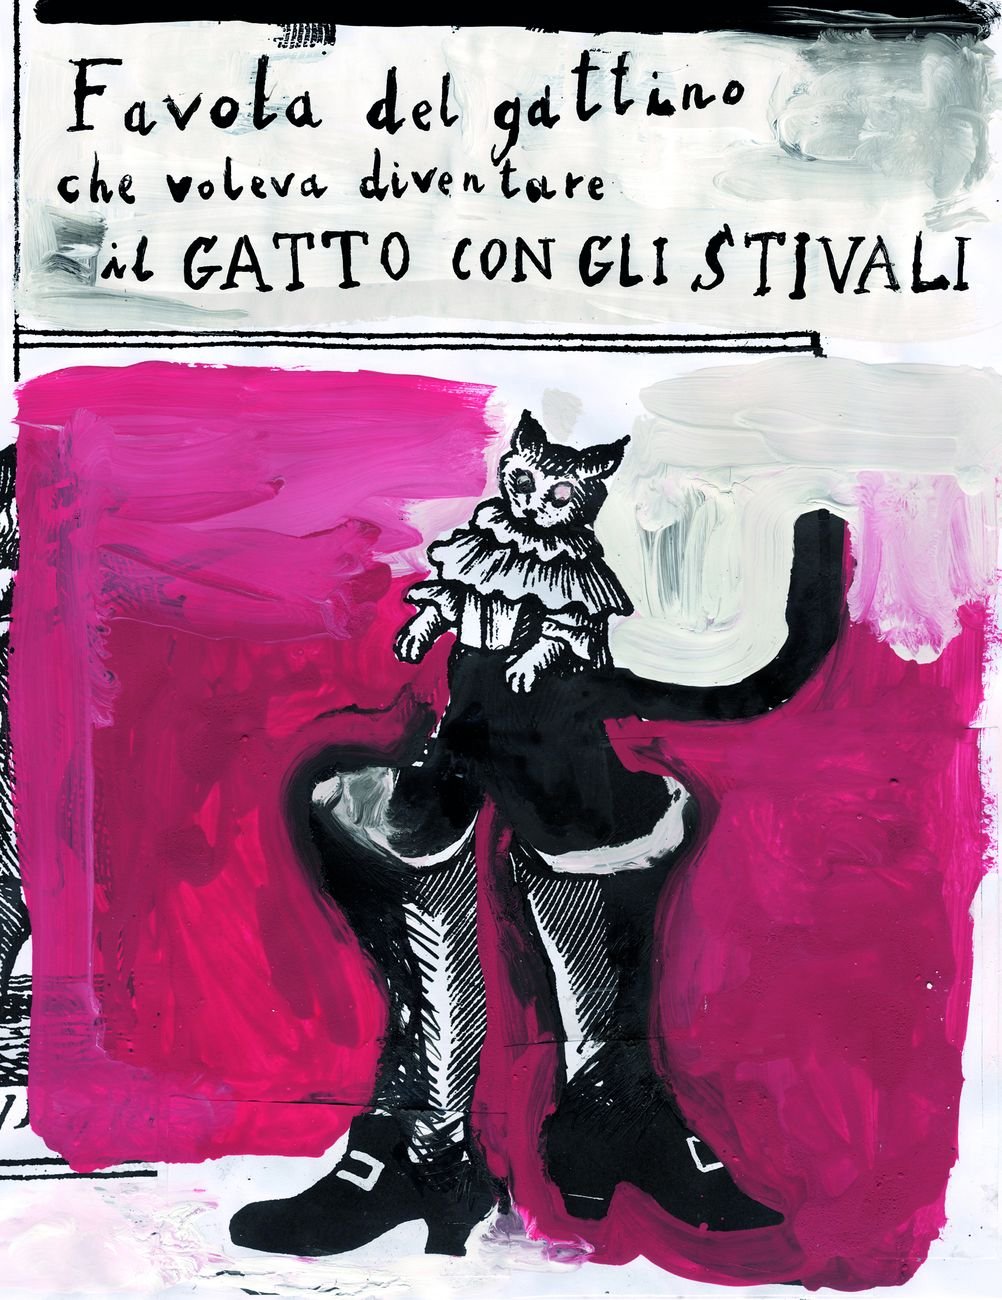 Ugo Cornia, Gianluigi Toccafondo ‒ Favola del gattino che voleva diventare il gatto con gli stivali (Galleria Civica di Modena, 2017)